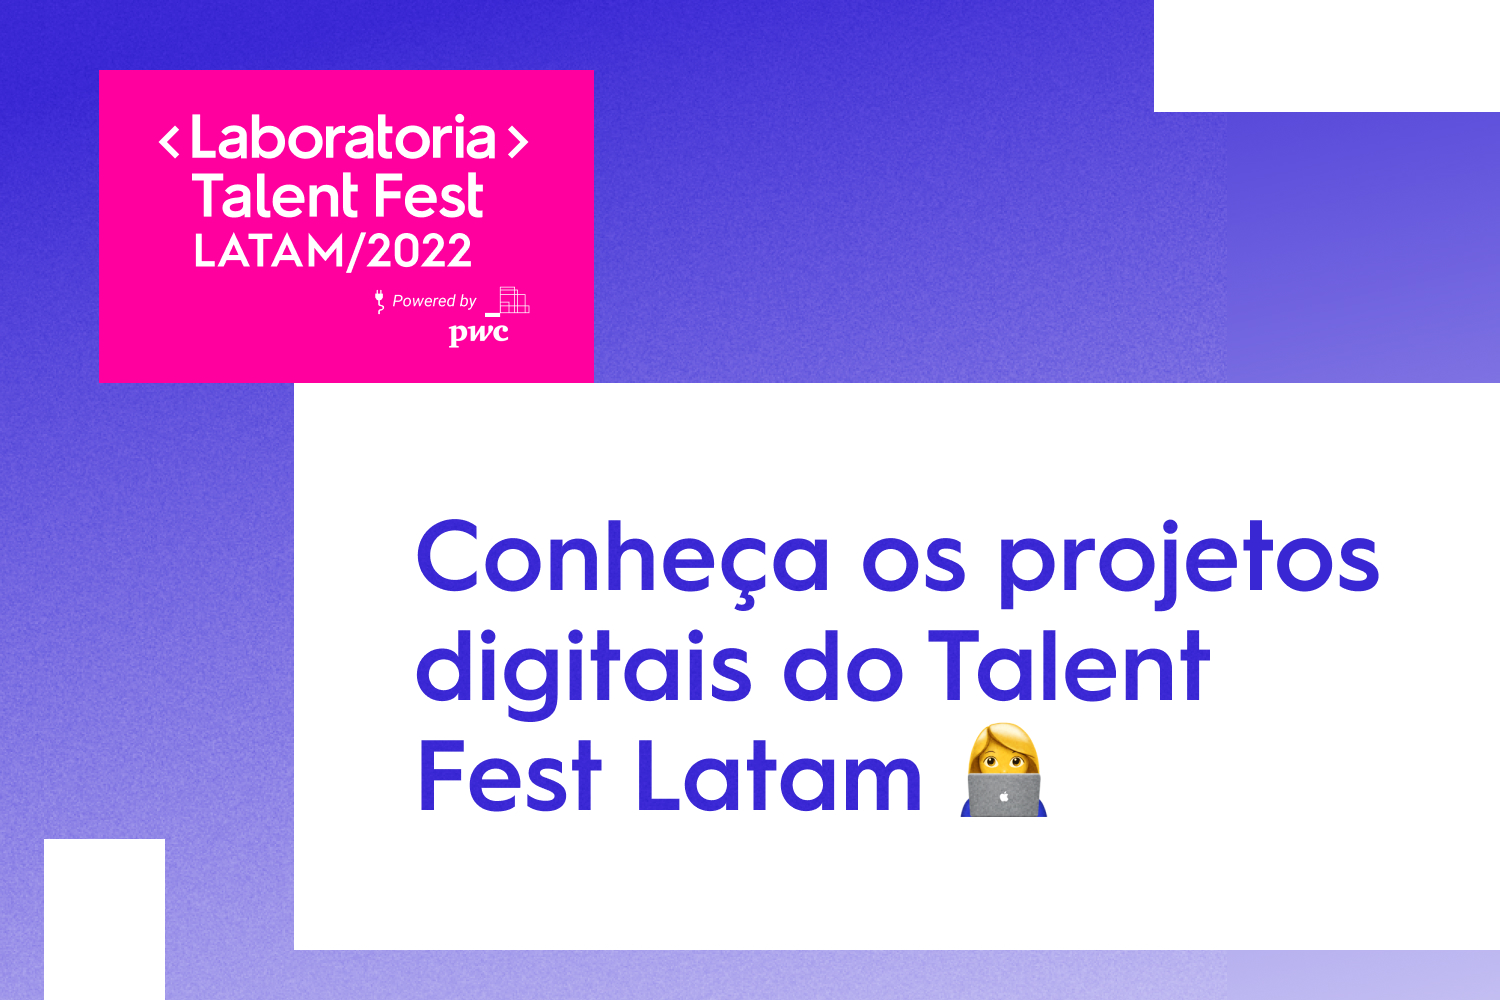 Estes são os desafios digitais do Talent Fest Latam 2022